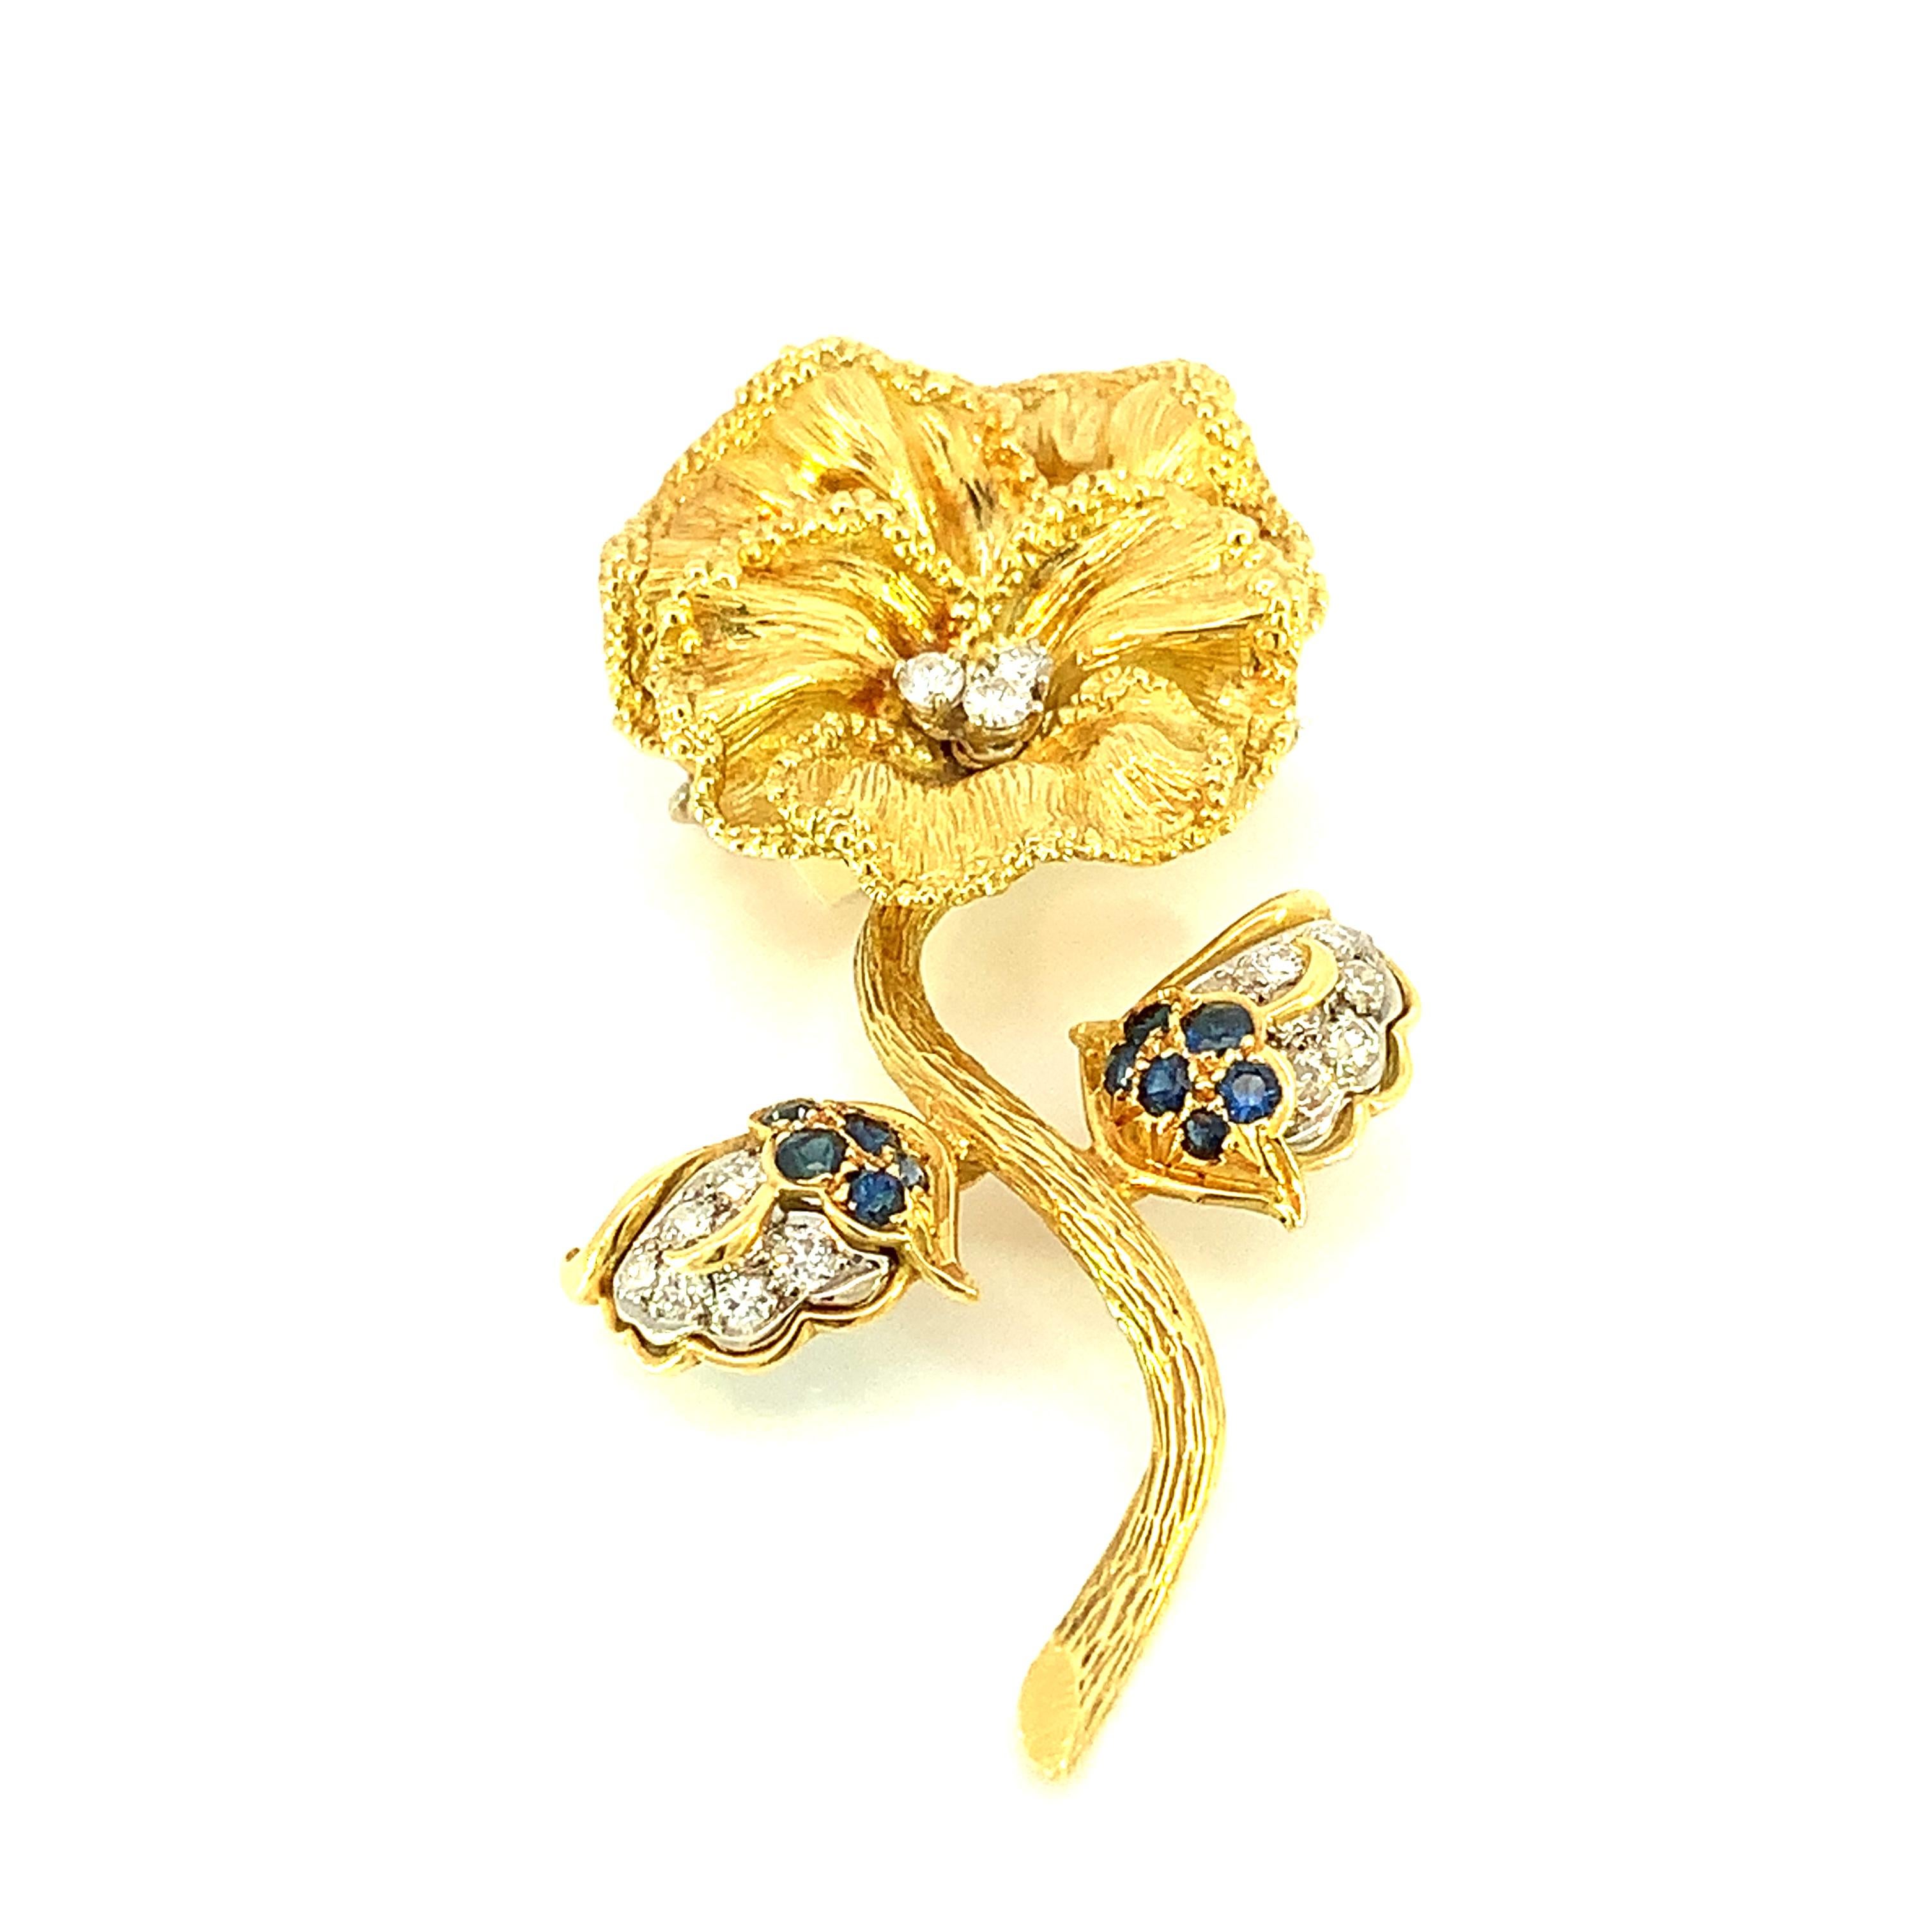 Wir stellen Ihnen unsere exquisite Blumenbrosche mit blauem Saphir und Diamanten vor, ein fein gearbeitetes Schmuckstück, das die zeitlose Eleganz von blauen Saphiren mit dem Glanz von Diamanten vereint, eingefasst in glänzendes 18 Karat Gelbgold.